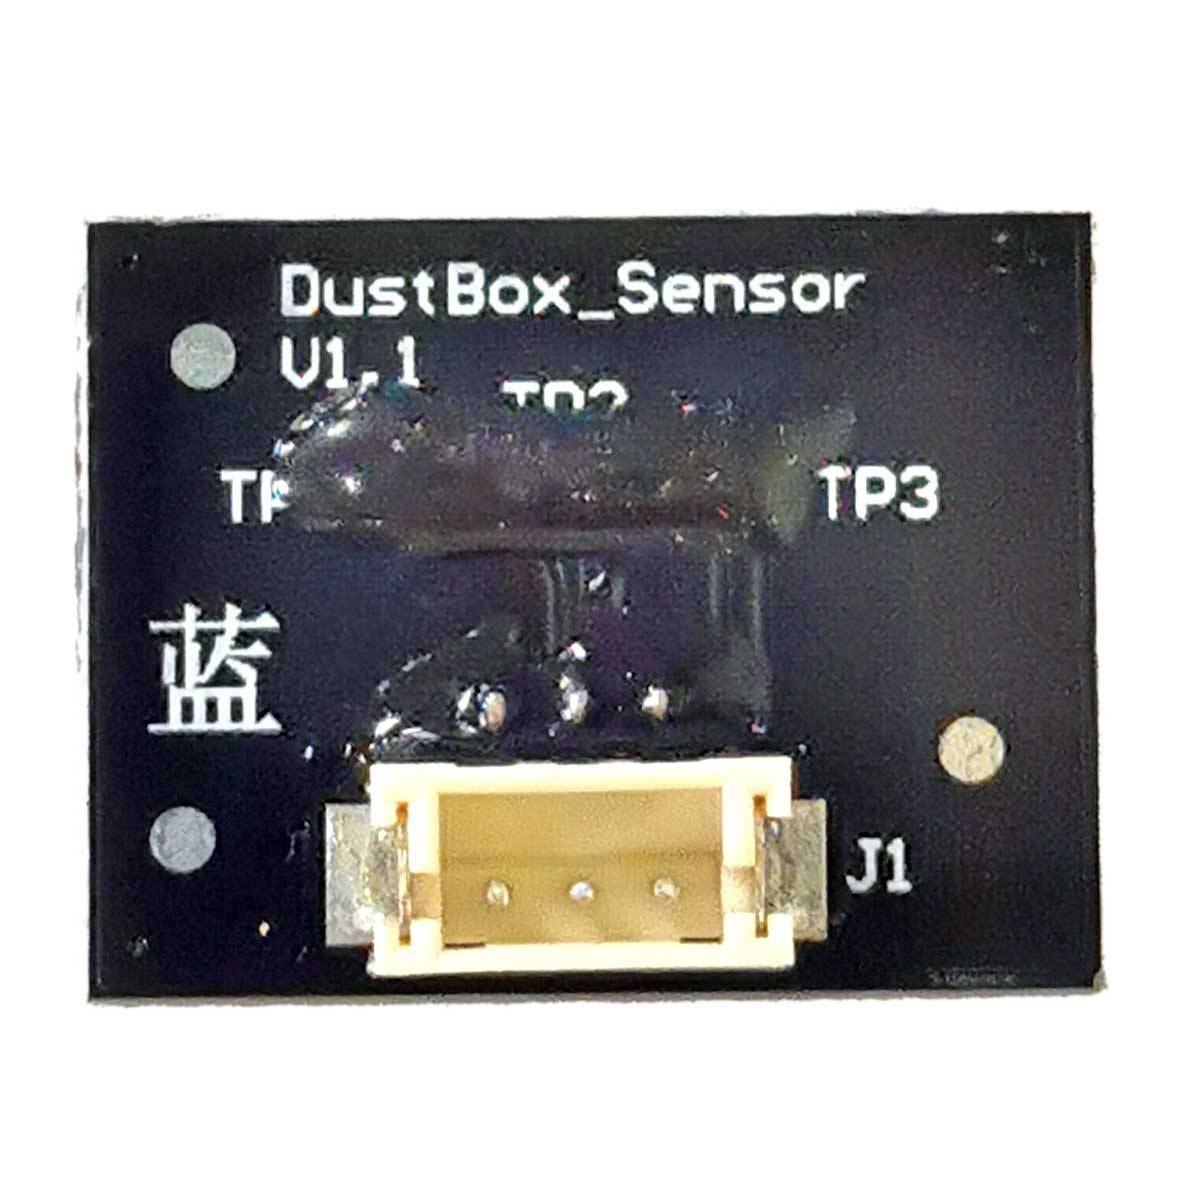 360 S6 Pro Dust Bin Sersor V1.1